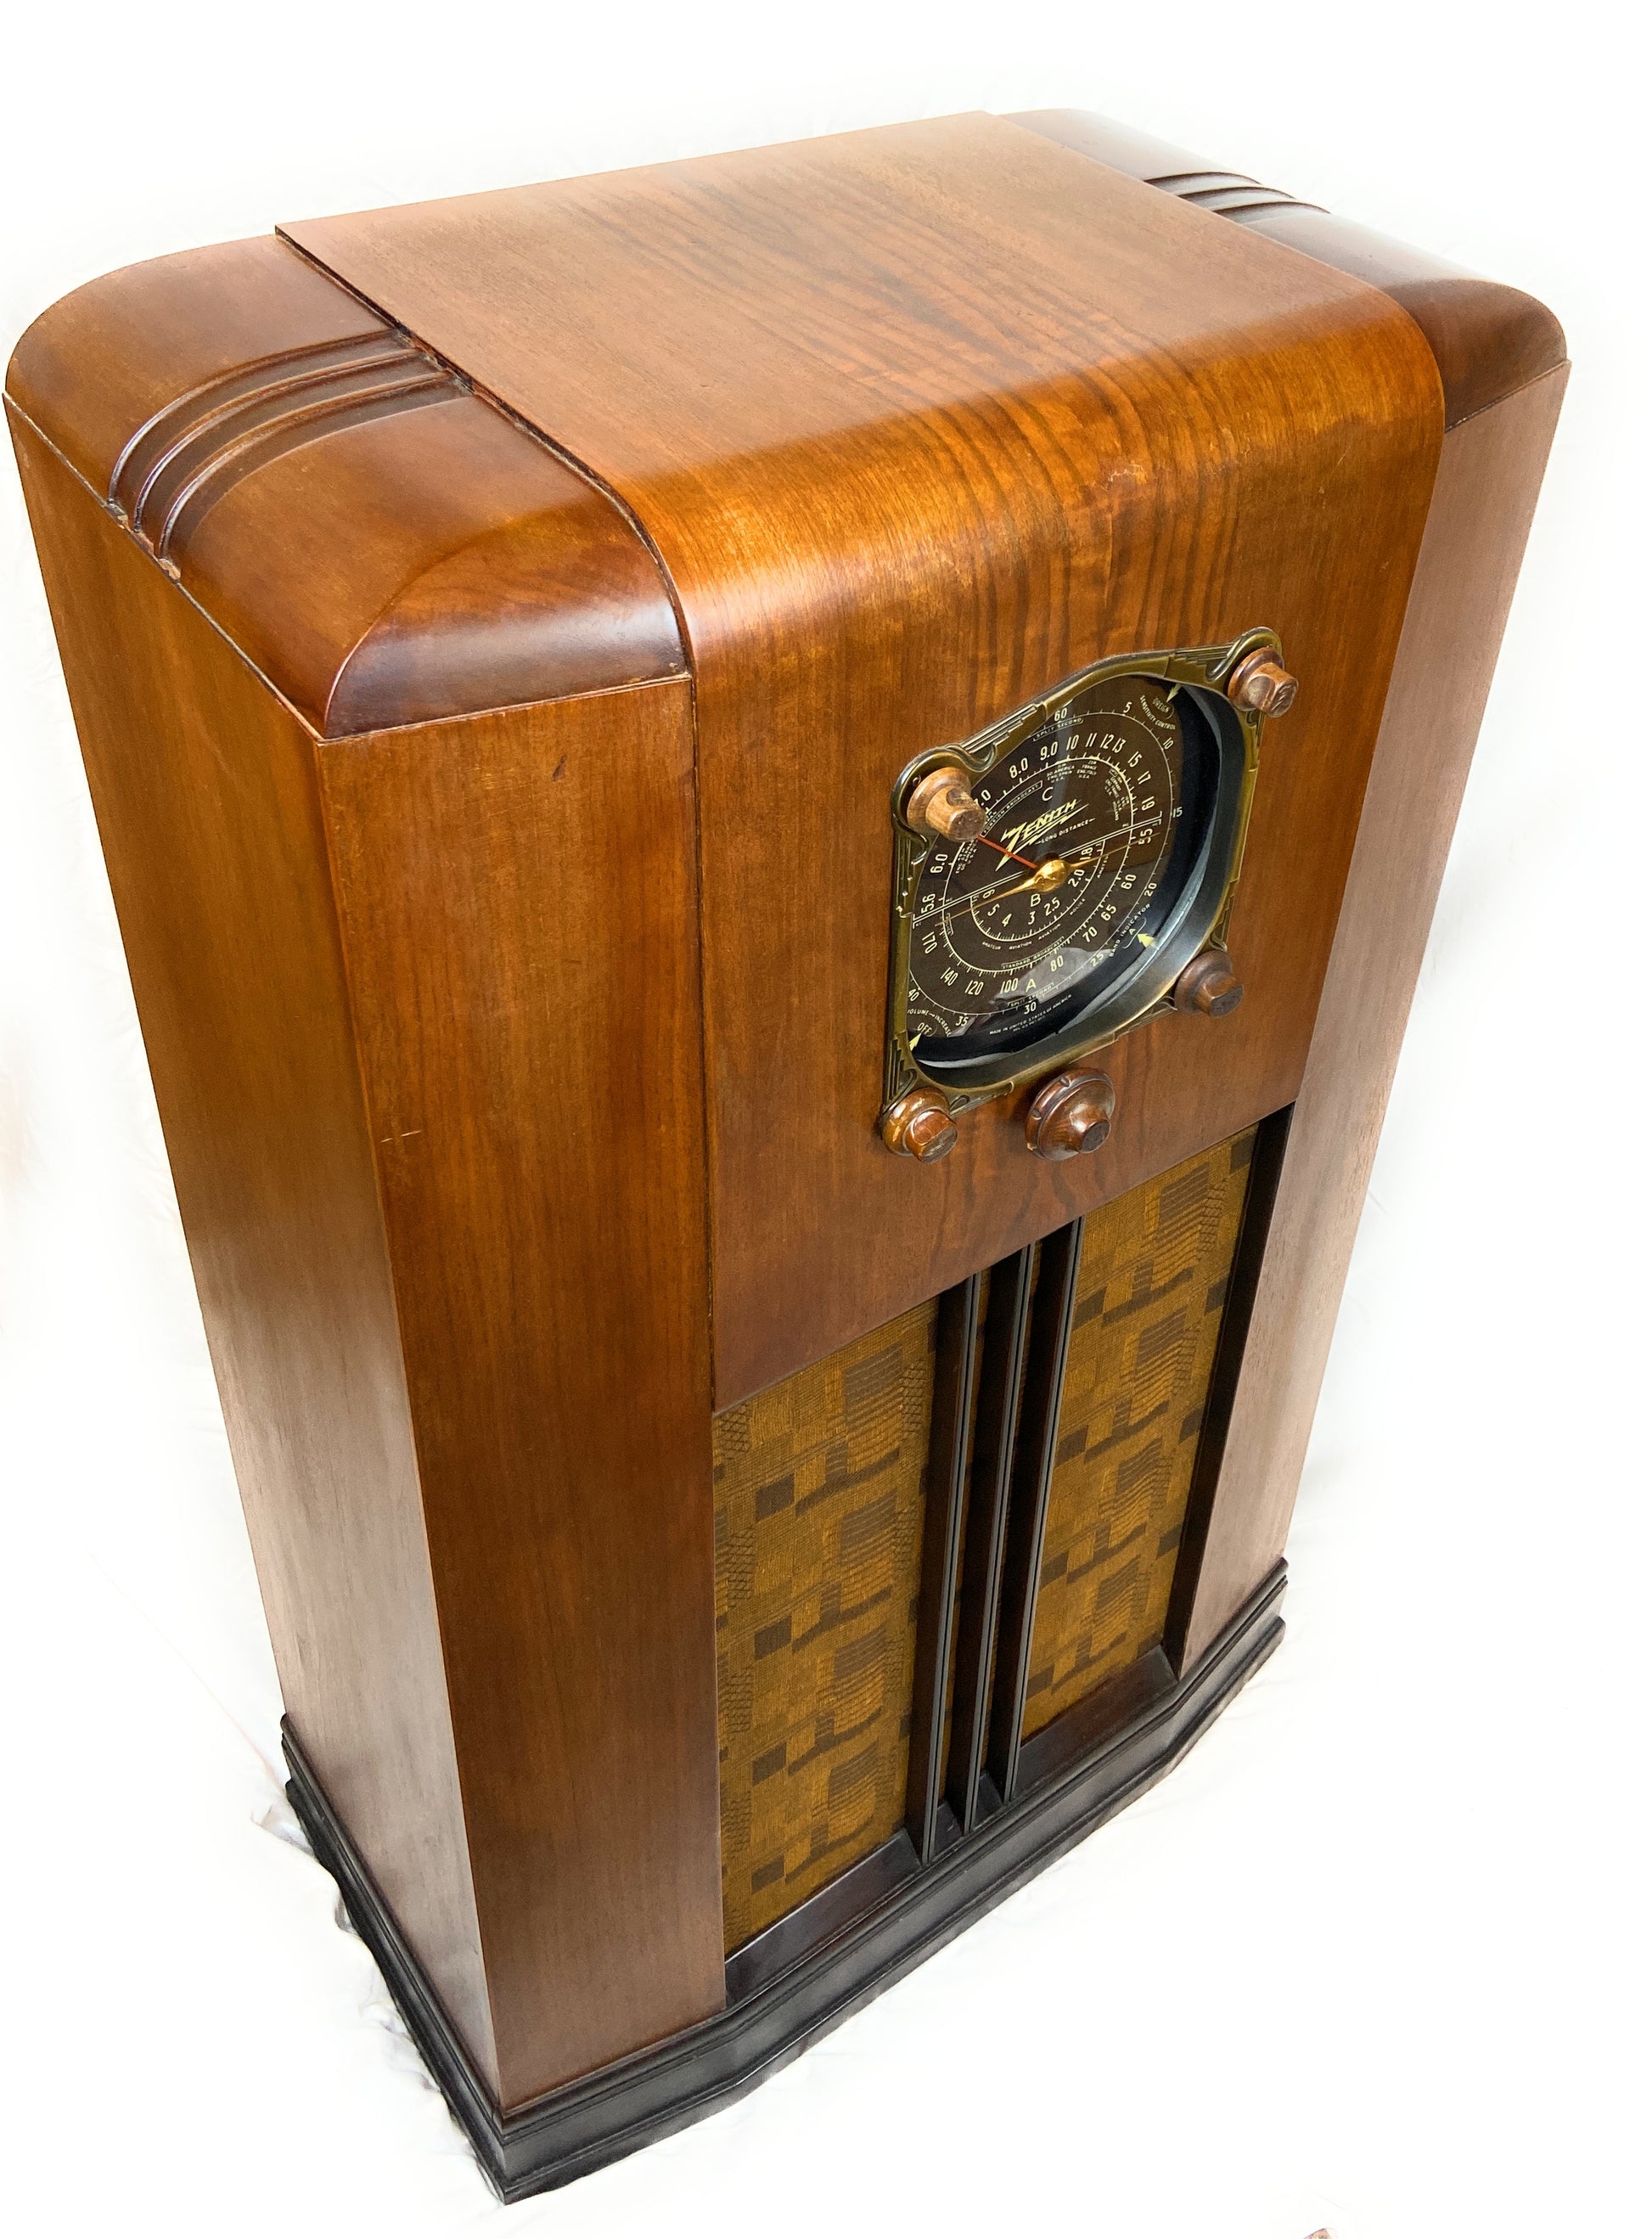 antique zenith radio